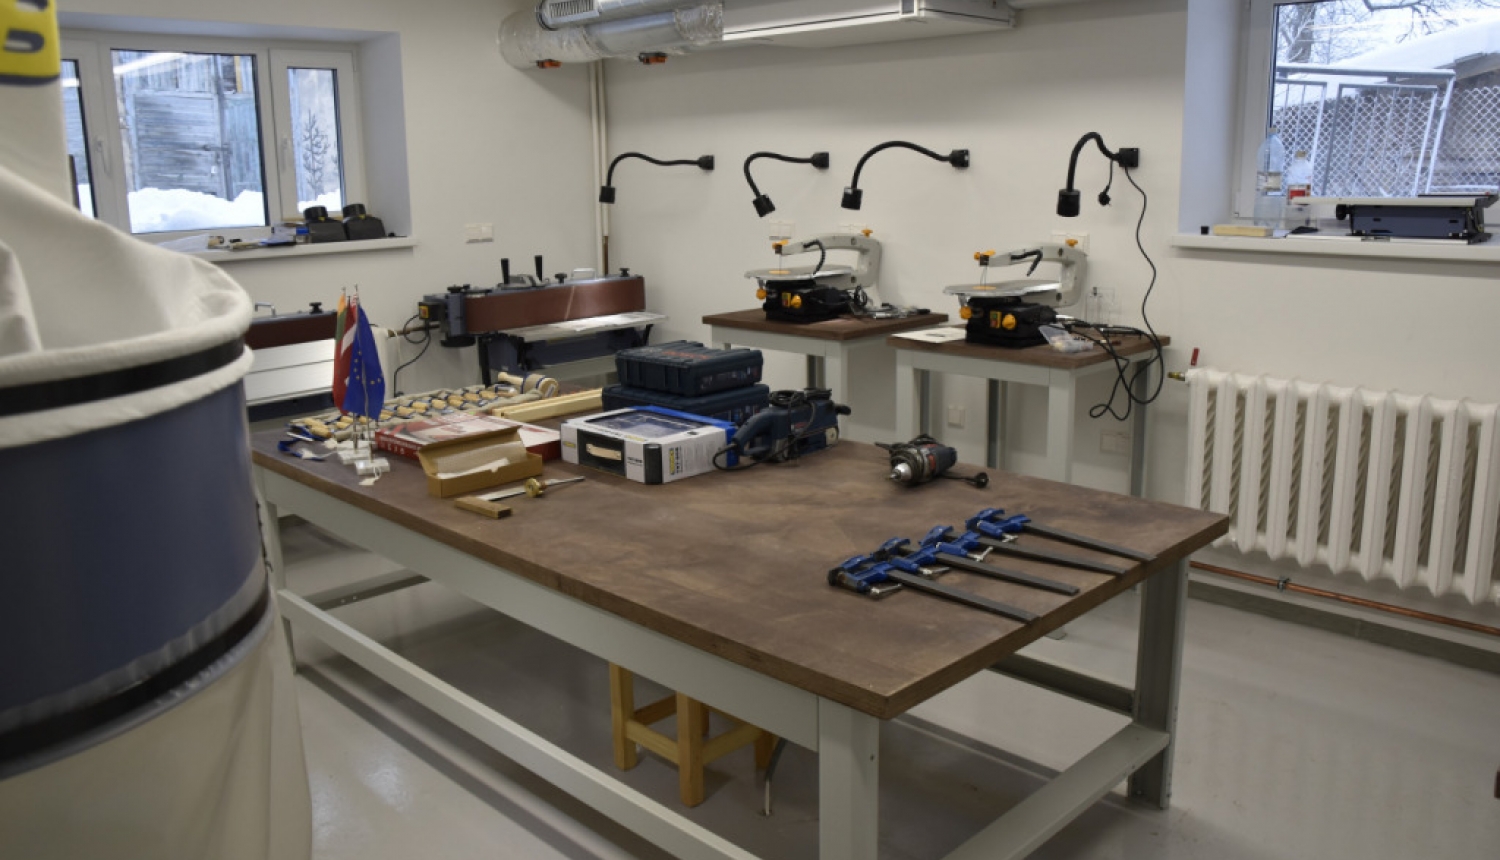 Vēl viens solis uz priekšu: Mākslas skolā ir izremontēts kokapstrādes kabinets